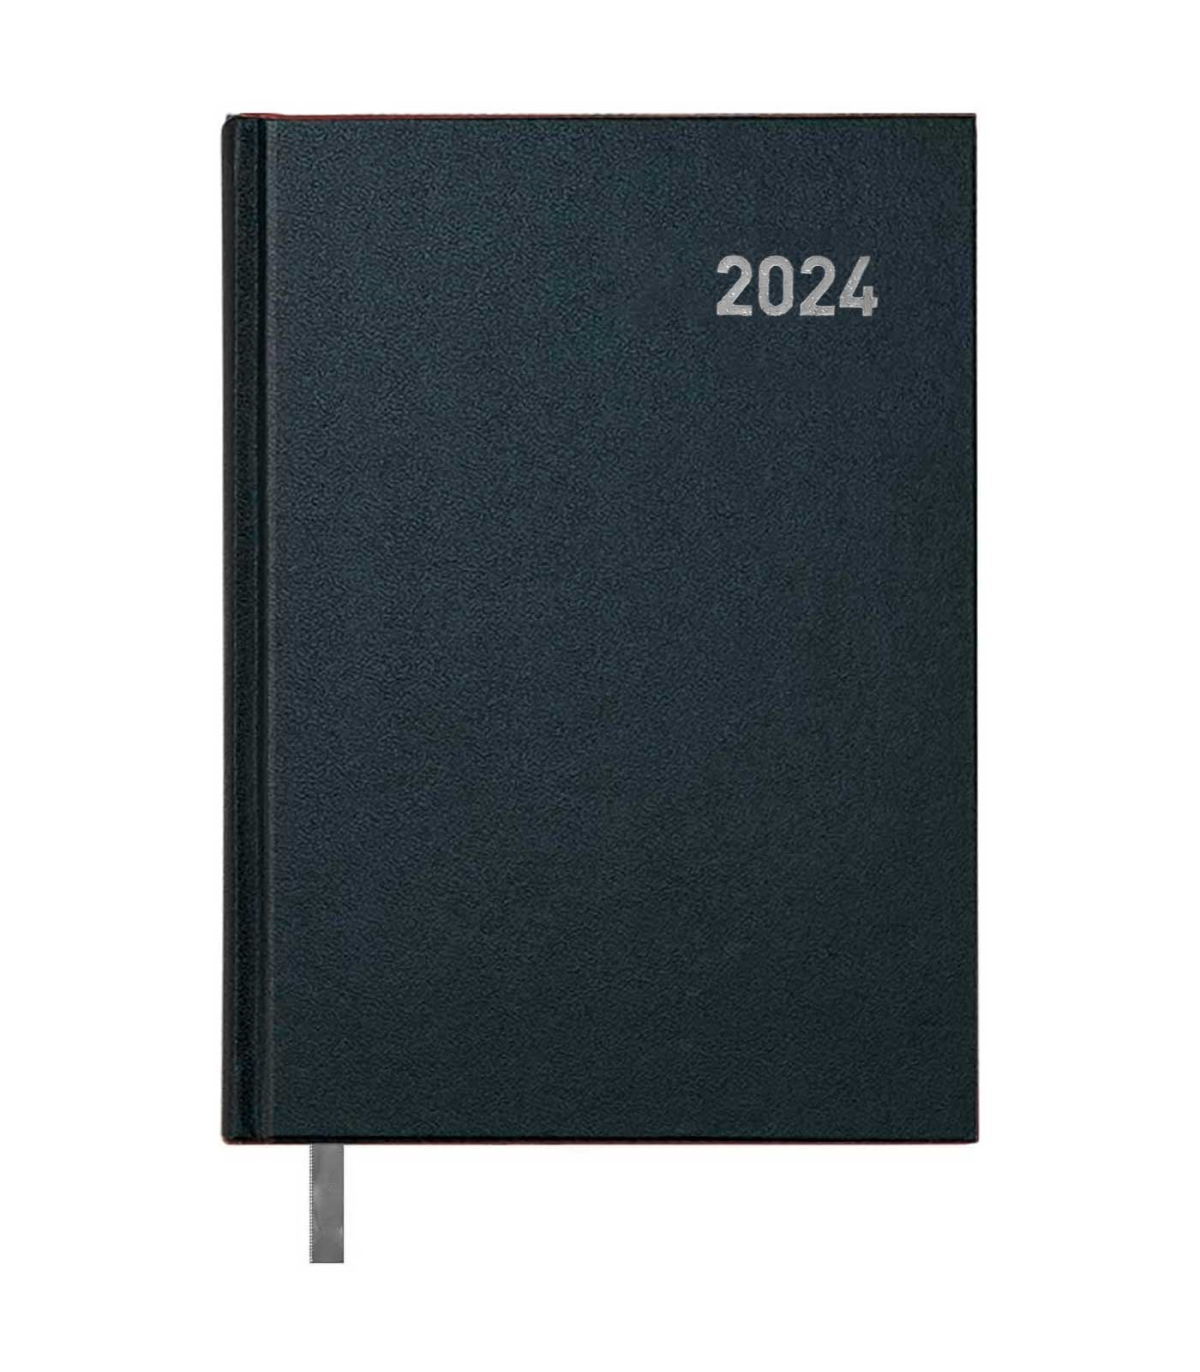 Tradineur - Agenda 2024 con tapa dura, modelo París, vista día página,  enero a diciembre, cinta marcapáginas, planificador anual